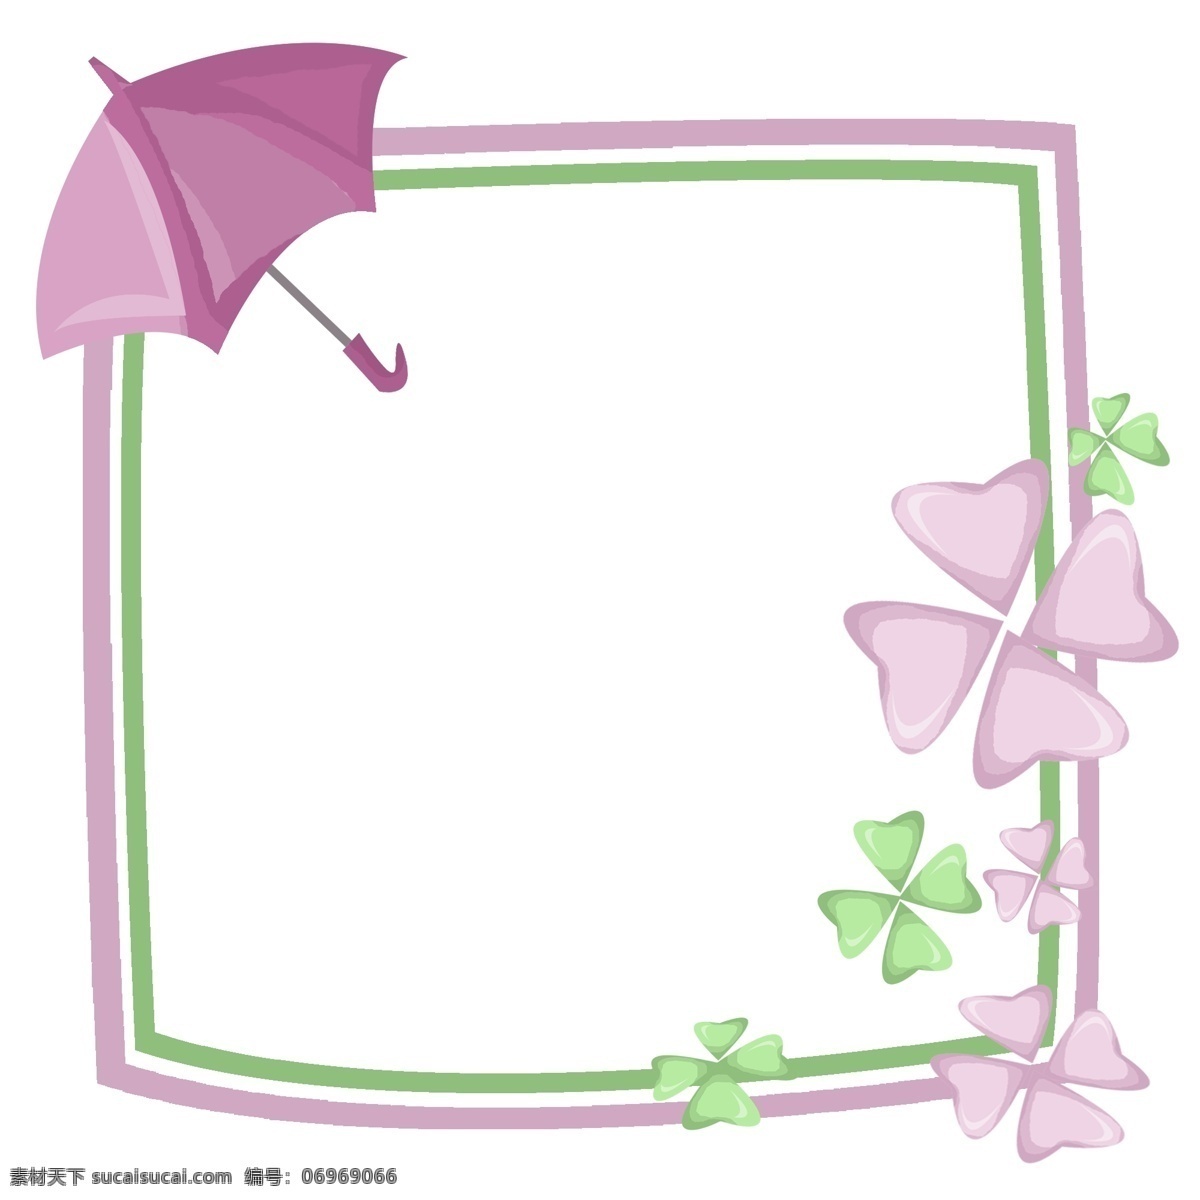 紫色 雨伞 插画 边框 正方形边框 绿色边框 紫色雨伞边框 紫色边框插画 爱情边框 紫色爱心边框